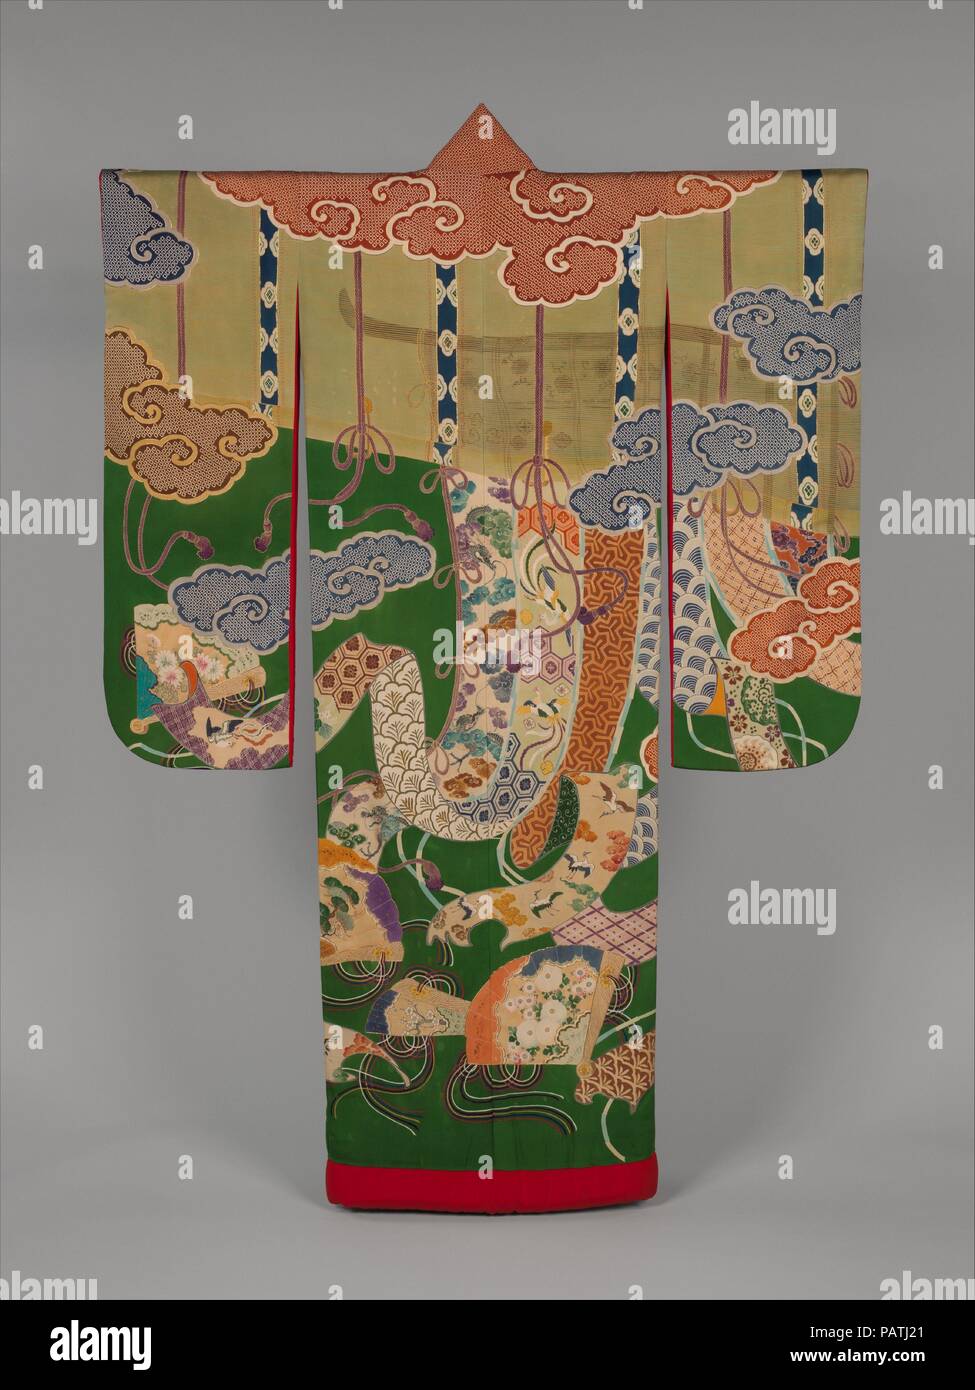 Über Robe (Uchikake) mit Design von Bambus Vorhang Jalousien, Leinwände, dekorative Ventilatoren und Auspicous Motive. Kultur: Japan. Maße: Gesamt: 76 x 51 in. (193 x 129,5 cm). Datum: Ca. 1920 s-30 s. Die stilisierte Wolken, Bambus Jalousien (MISU), minutiös gestalteten Vorhang Bildschirme (kicho), und kunstvolle Fans geschmückt mit bunten Zeichenfolgen (Hiogi) erinnern an das goldene Zeitalter der Heian-zeit (794-1185). Diese Art der dekorativen Muster in Mode in der zweiten Hälfte der Edo-Zeit (1615-1868) unter den Wohlhabenden chonin Damen. Es fuhr in veränderter Form in die frühen twentie populär zu werden. Stockfoto